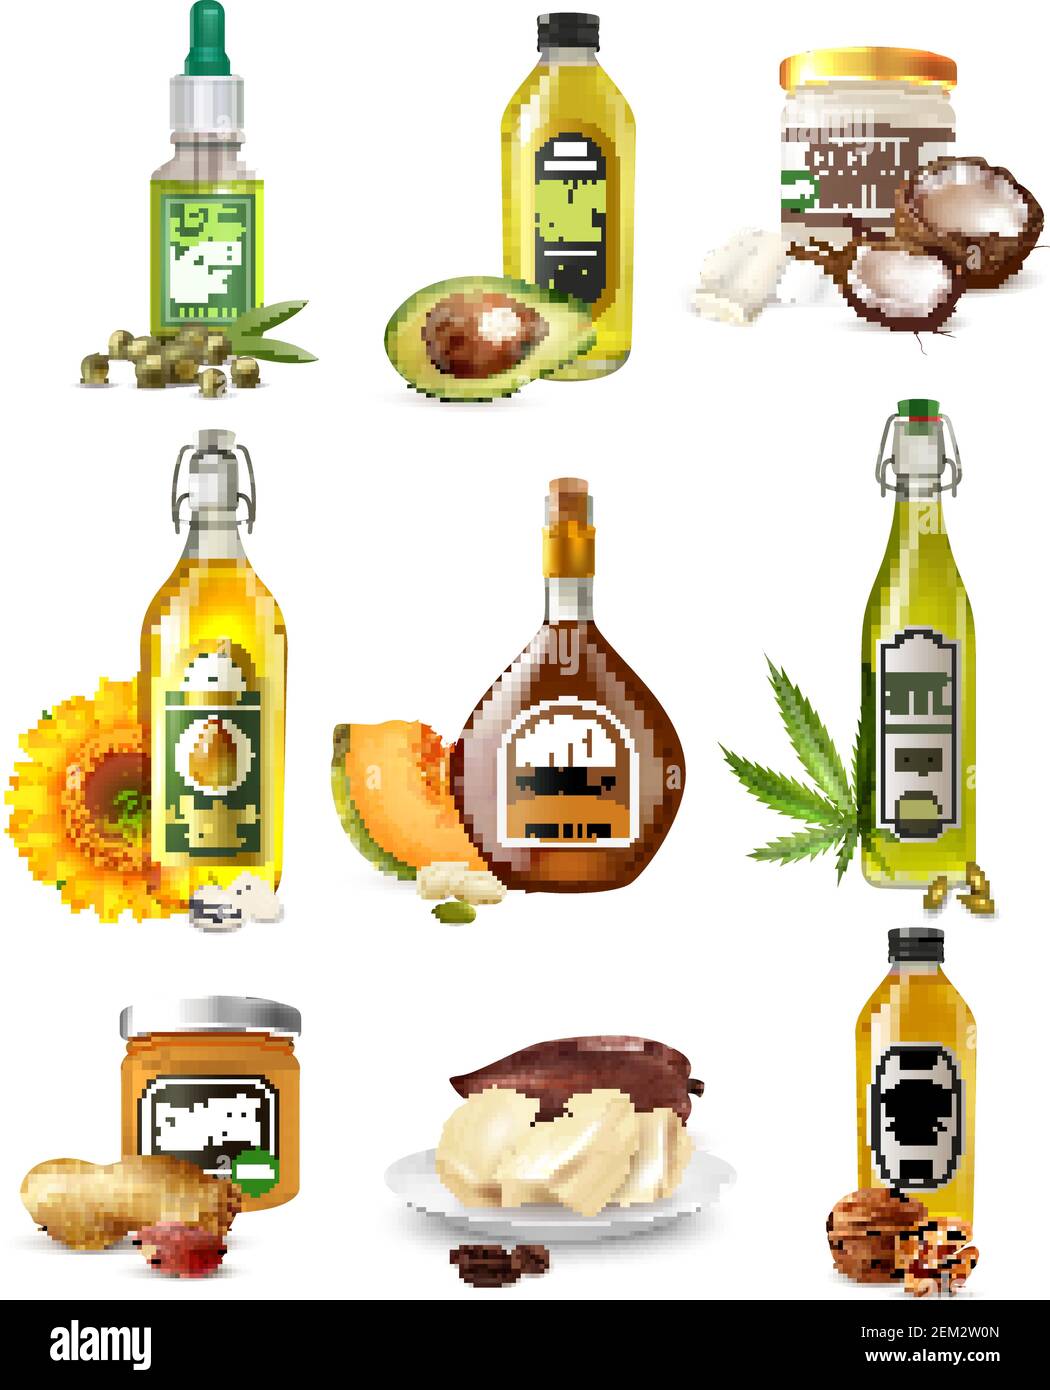 Ensemble d'huiles végétales réalistes provenant de graines, de noix et de fruits en bouteilles et bocaux illustration vectorielle isolée Illustration de Vecteur